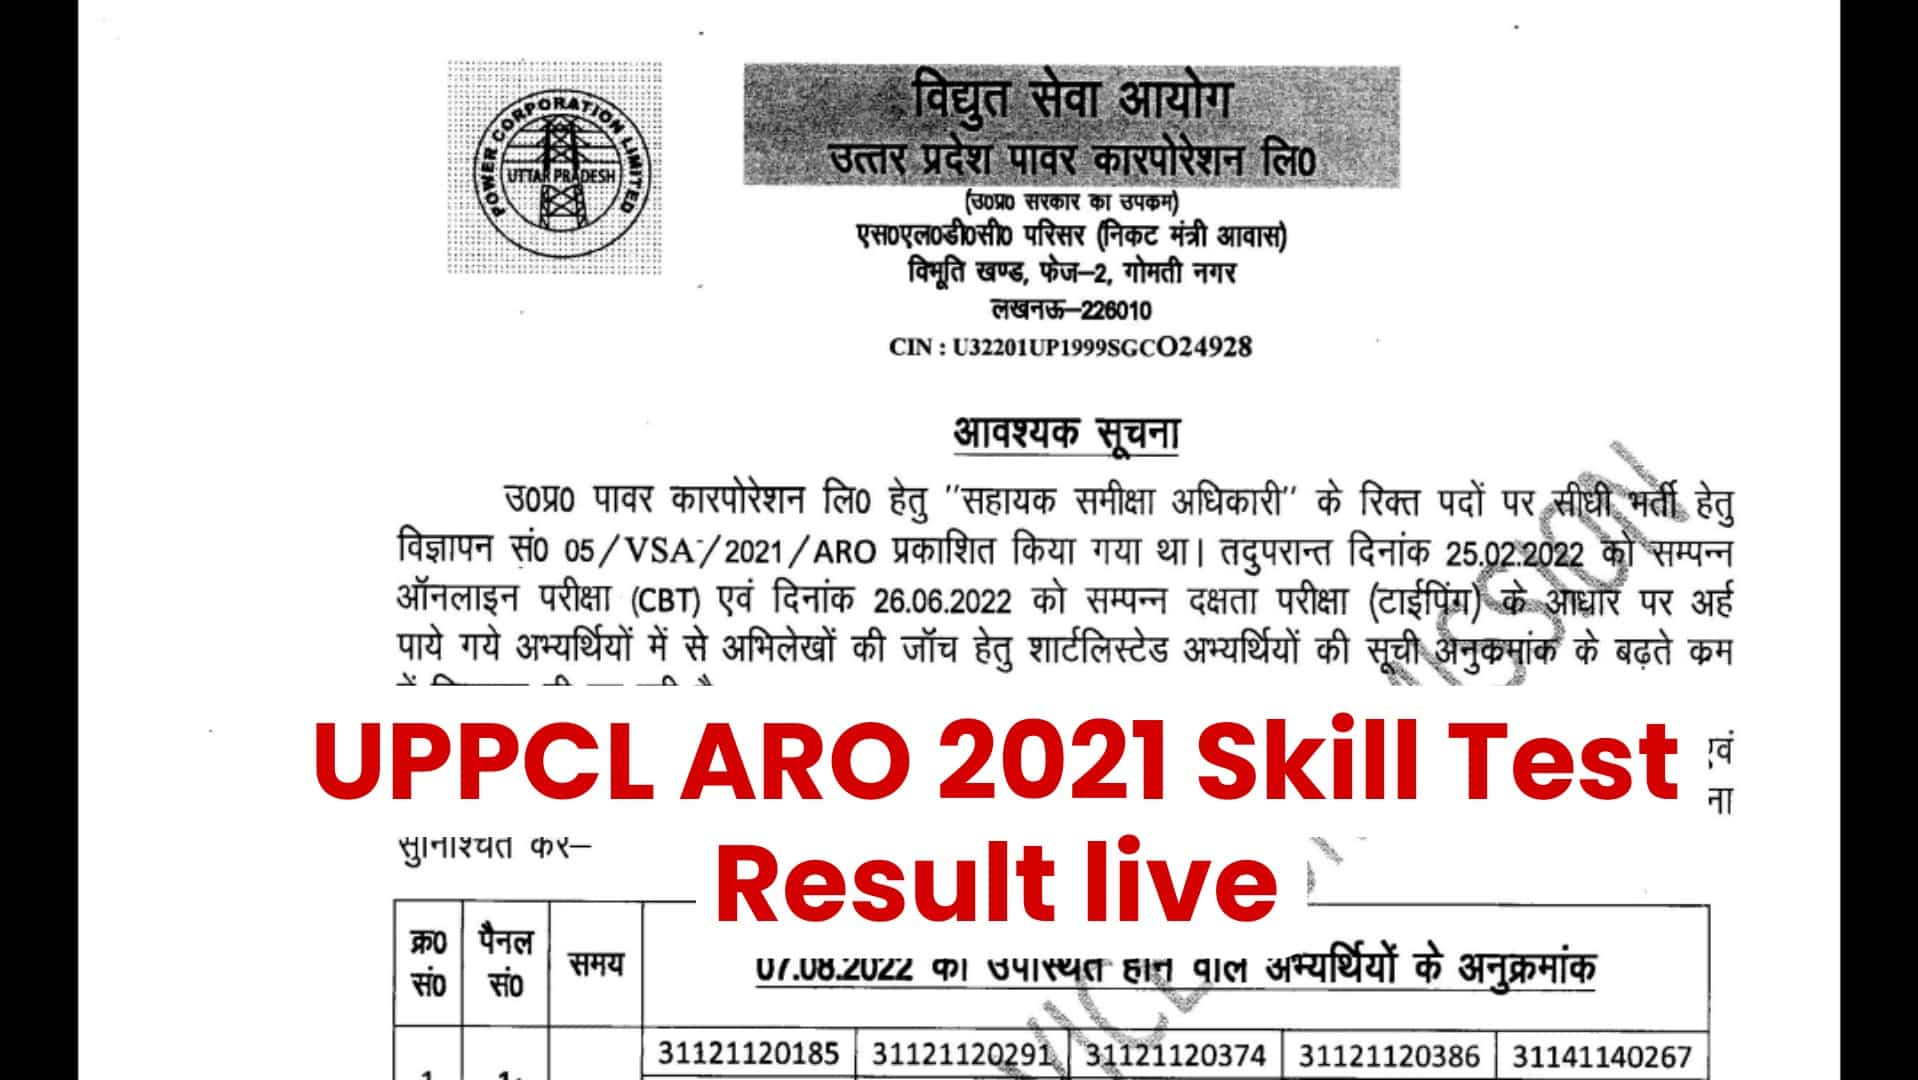 UPPCL ARO 2021 Skill Test Result